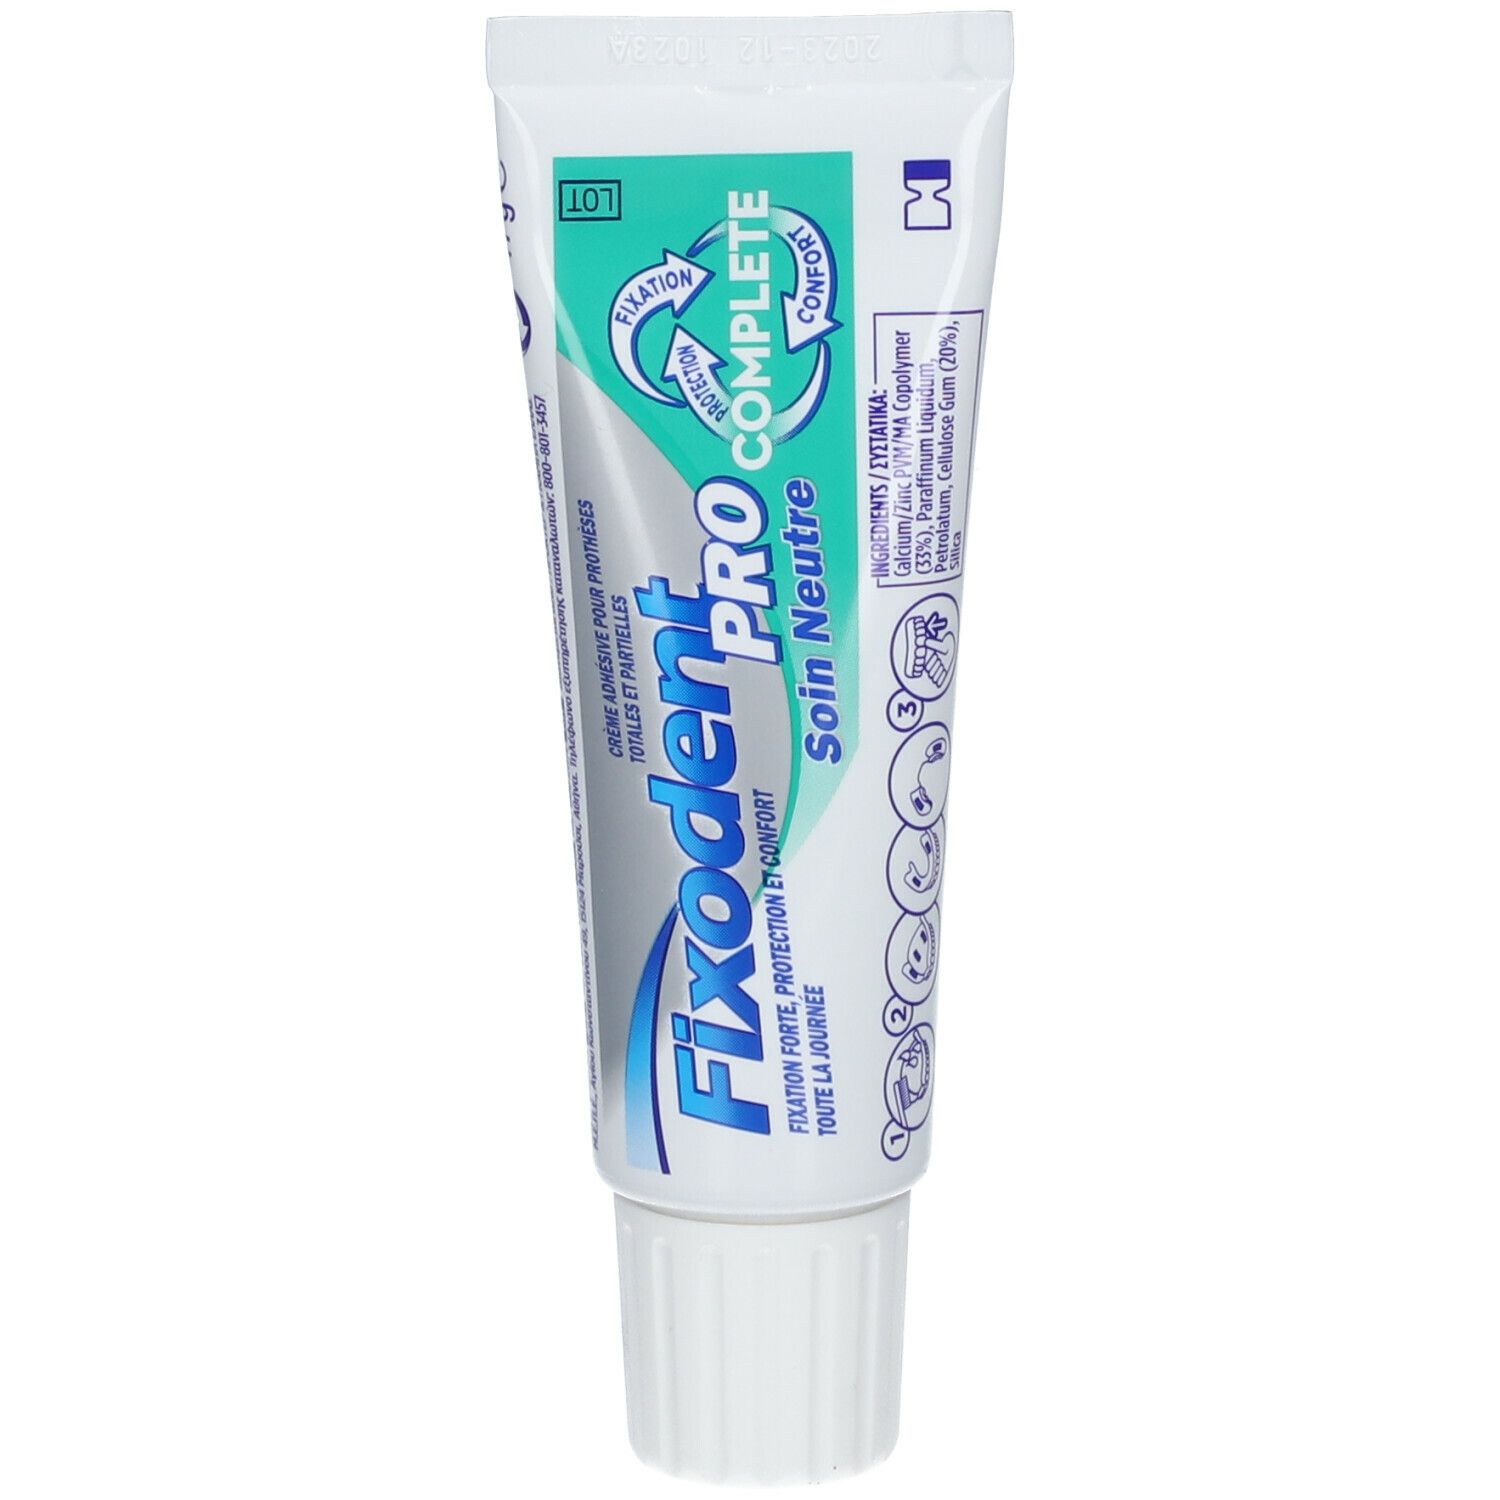 Fixodent Pro Complete Soin Neutre Crème Adhésive Pour Prothèses Dentaires